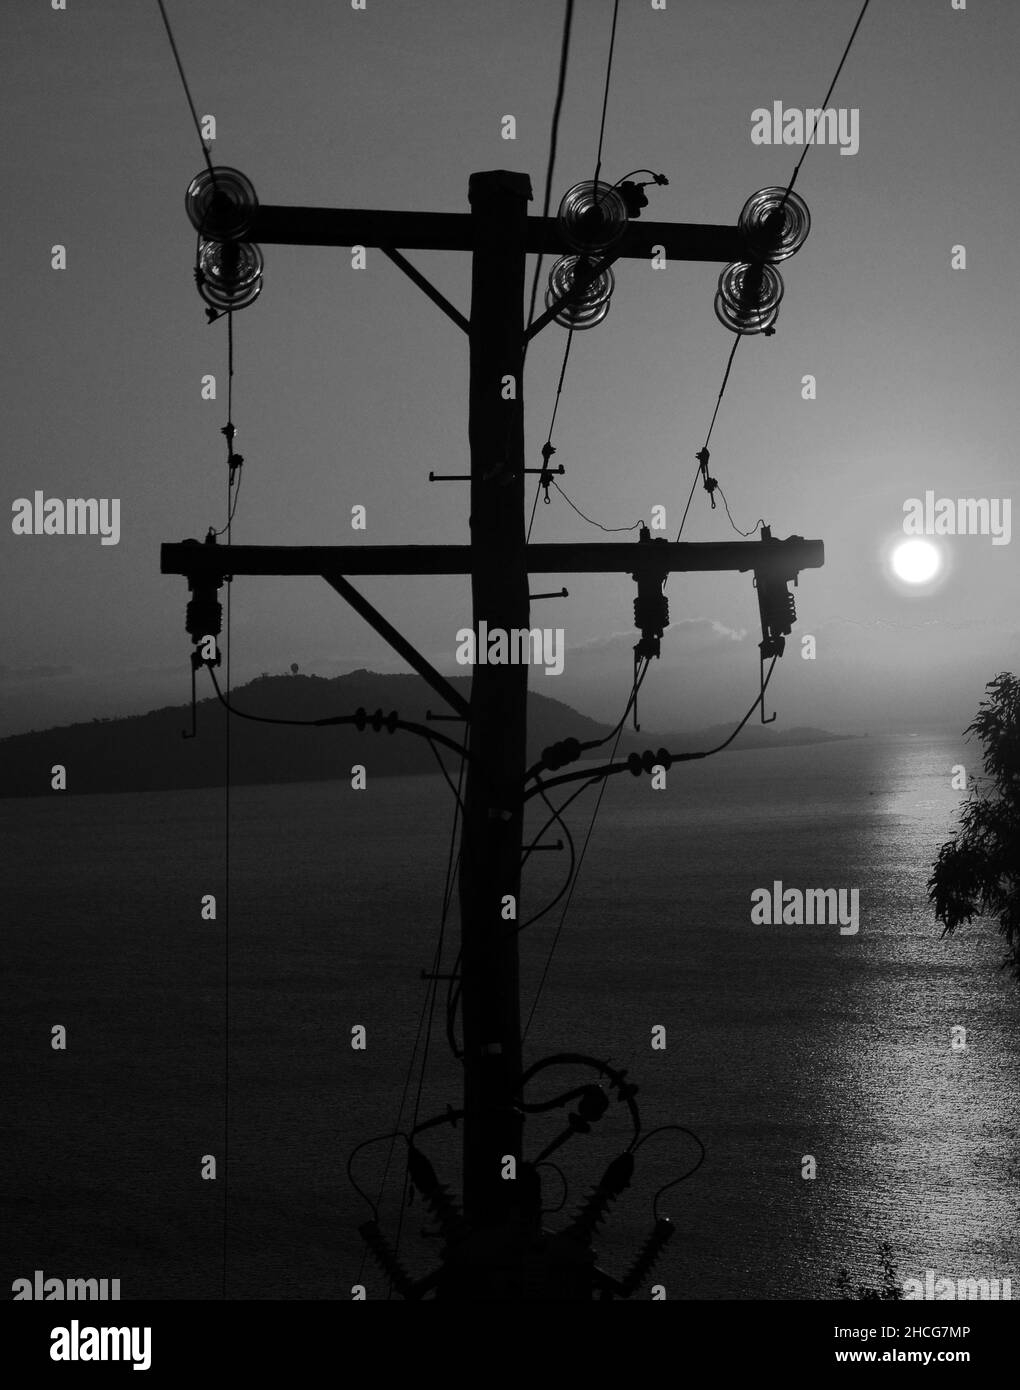 Les lignes électriques au coucher du soleil Banque D'Images